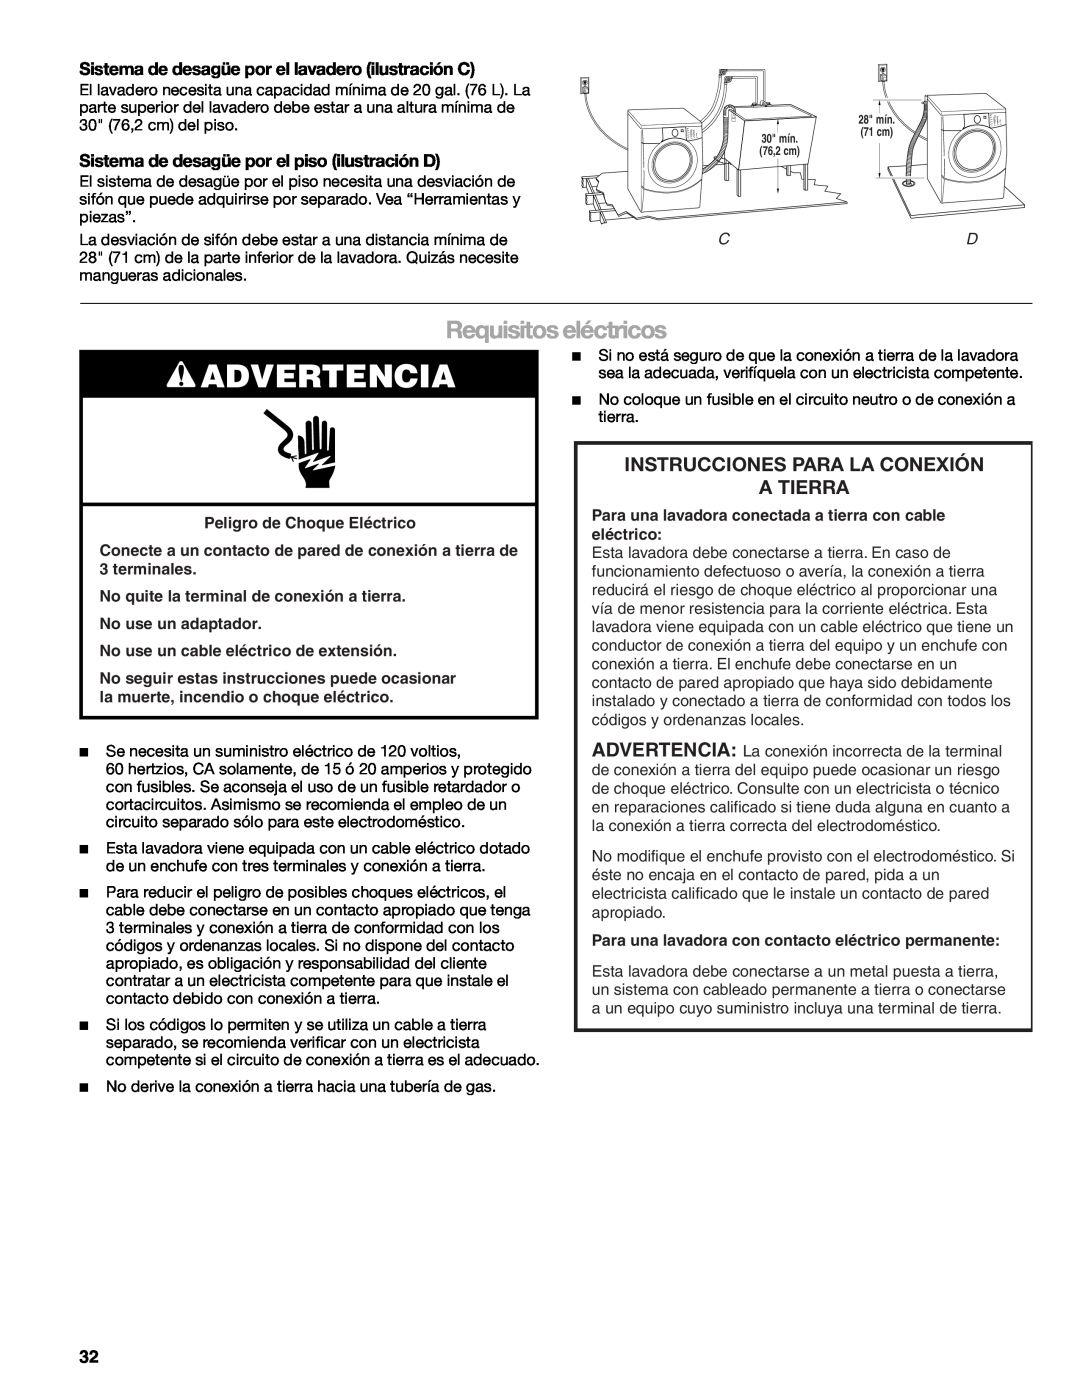 Kenmore W10133487A manual Advertencia, Requisitos eléctricos, Instrucciones Para La Conexión A Tierra 